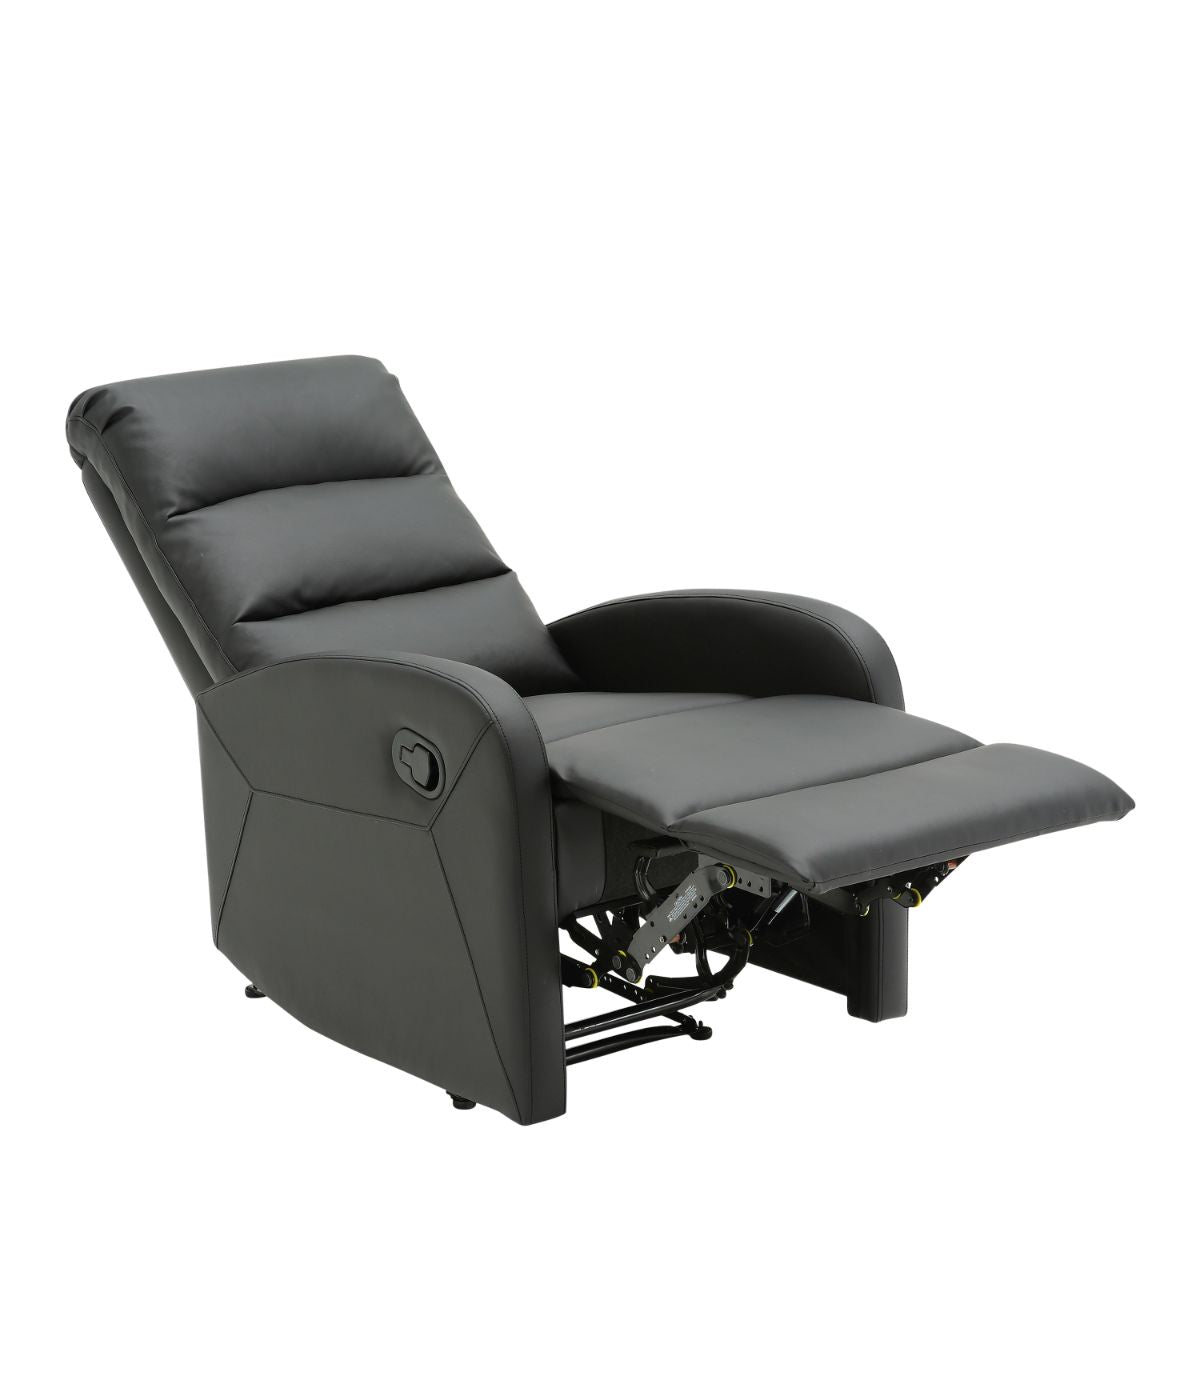 Dormi Recliner Chair Black